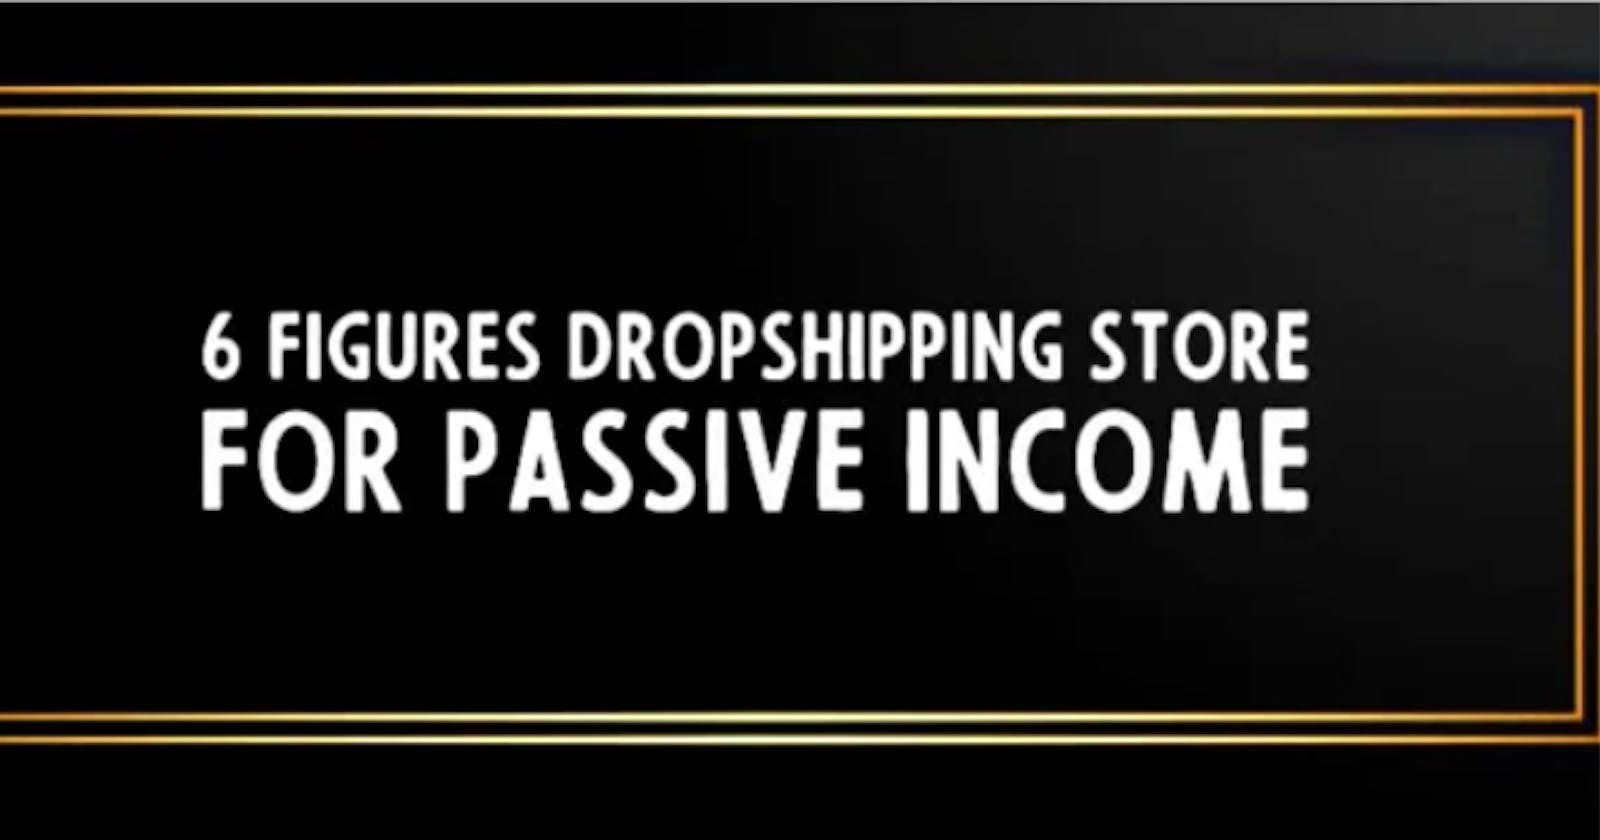 A passive income stream: Dropshipping